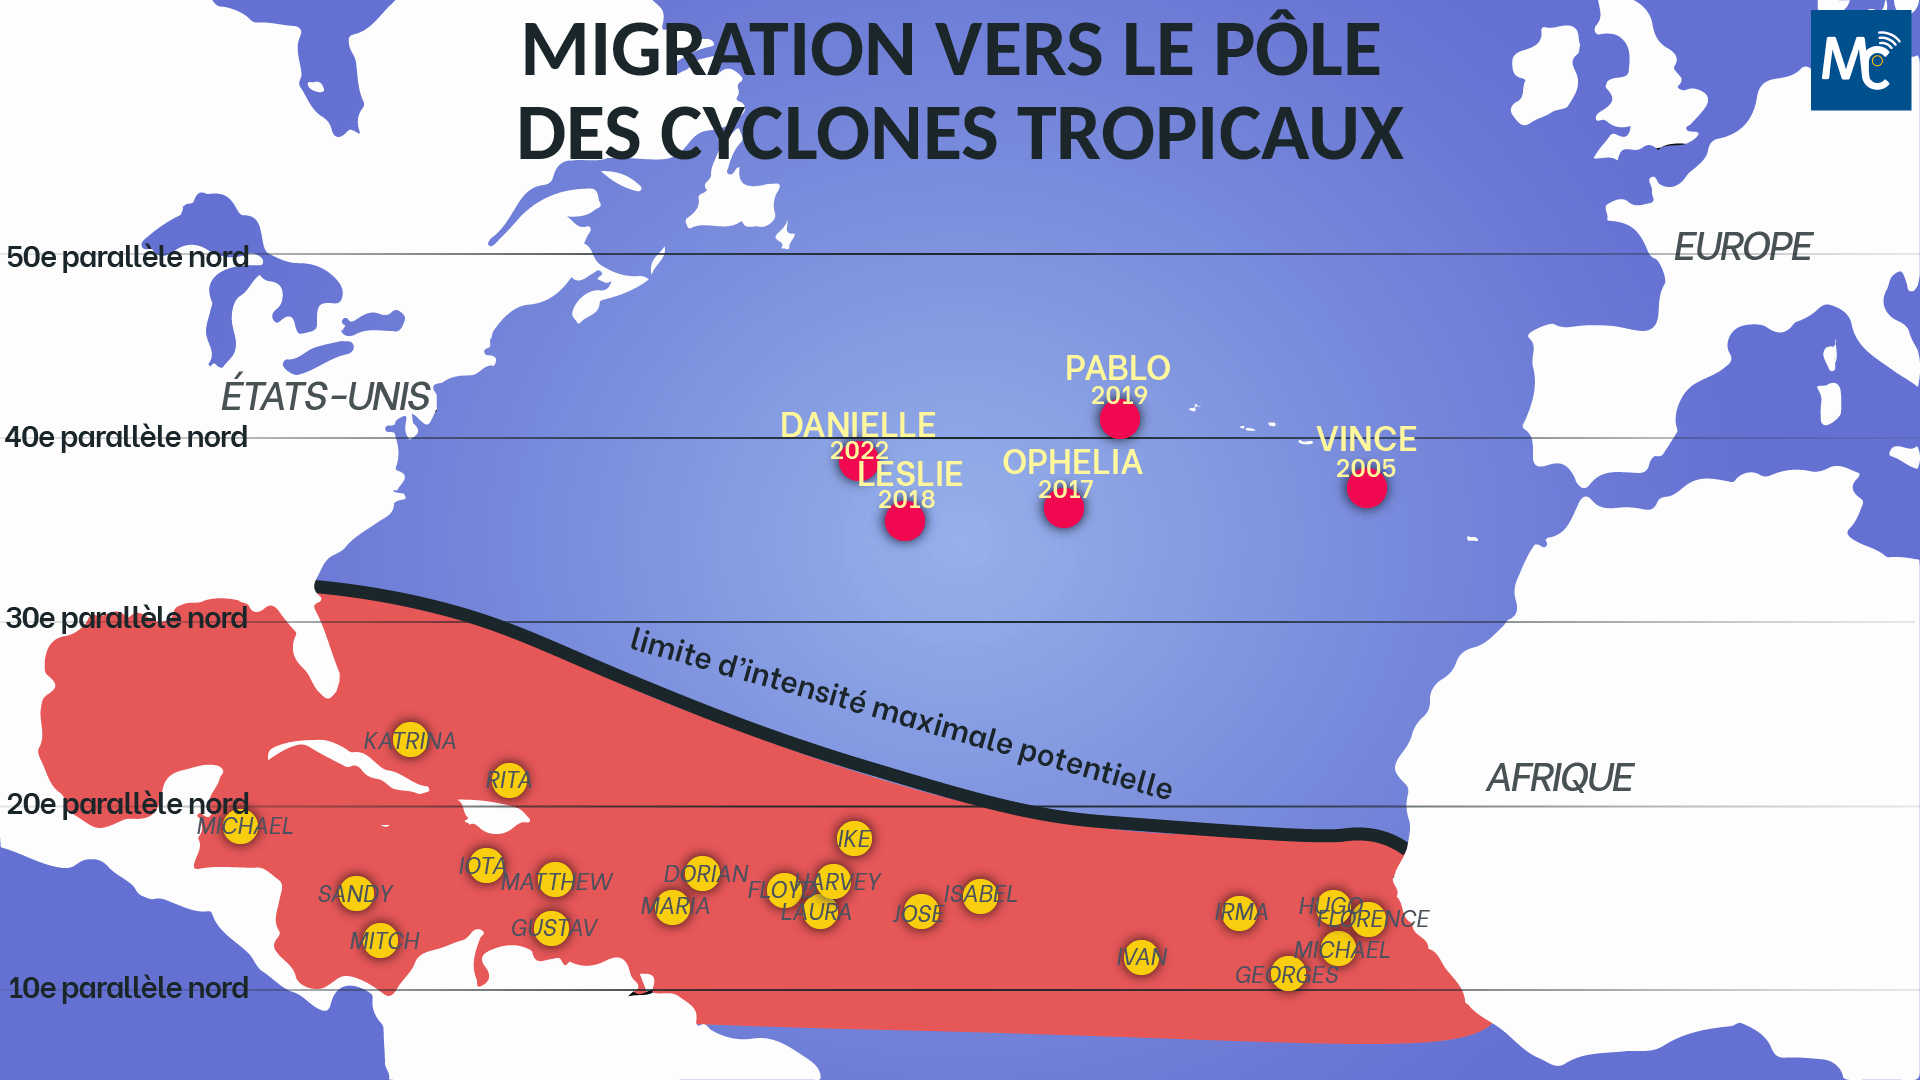 Migration vers le pôle des cyclones tropicaux